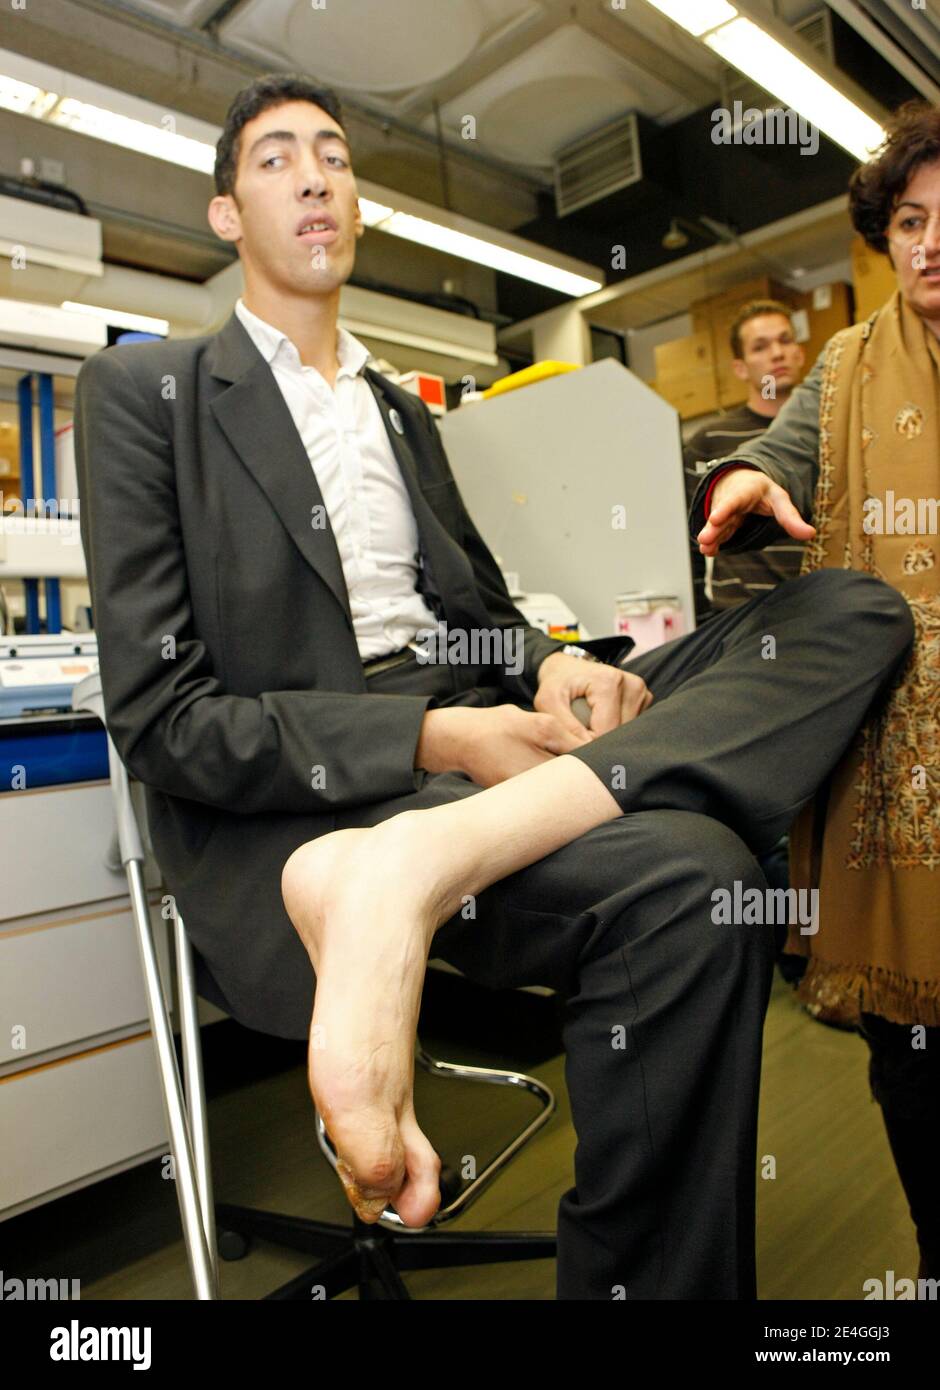 EXCLUSIF. Le 9 novembre 2009, Turk Sultan Kosen, qui détient actuellement  le record du plus grand homme vivant au monde, reconnu par Guinness World  Records, essaie des chaussures sur mesure à l'hôpital